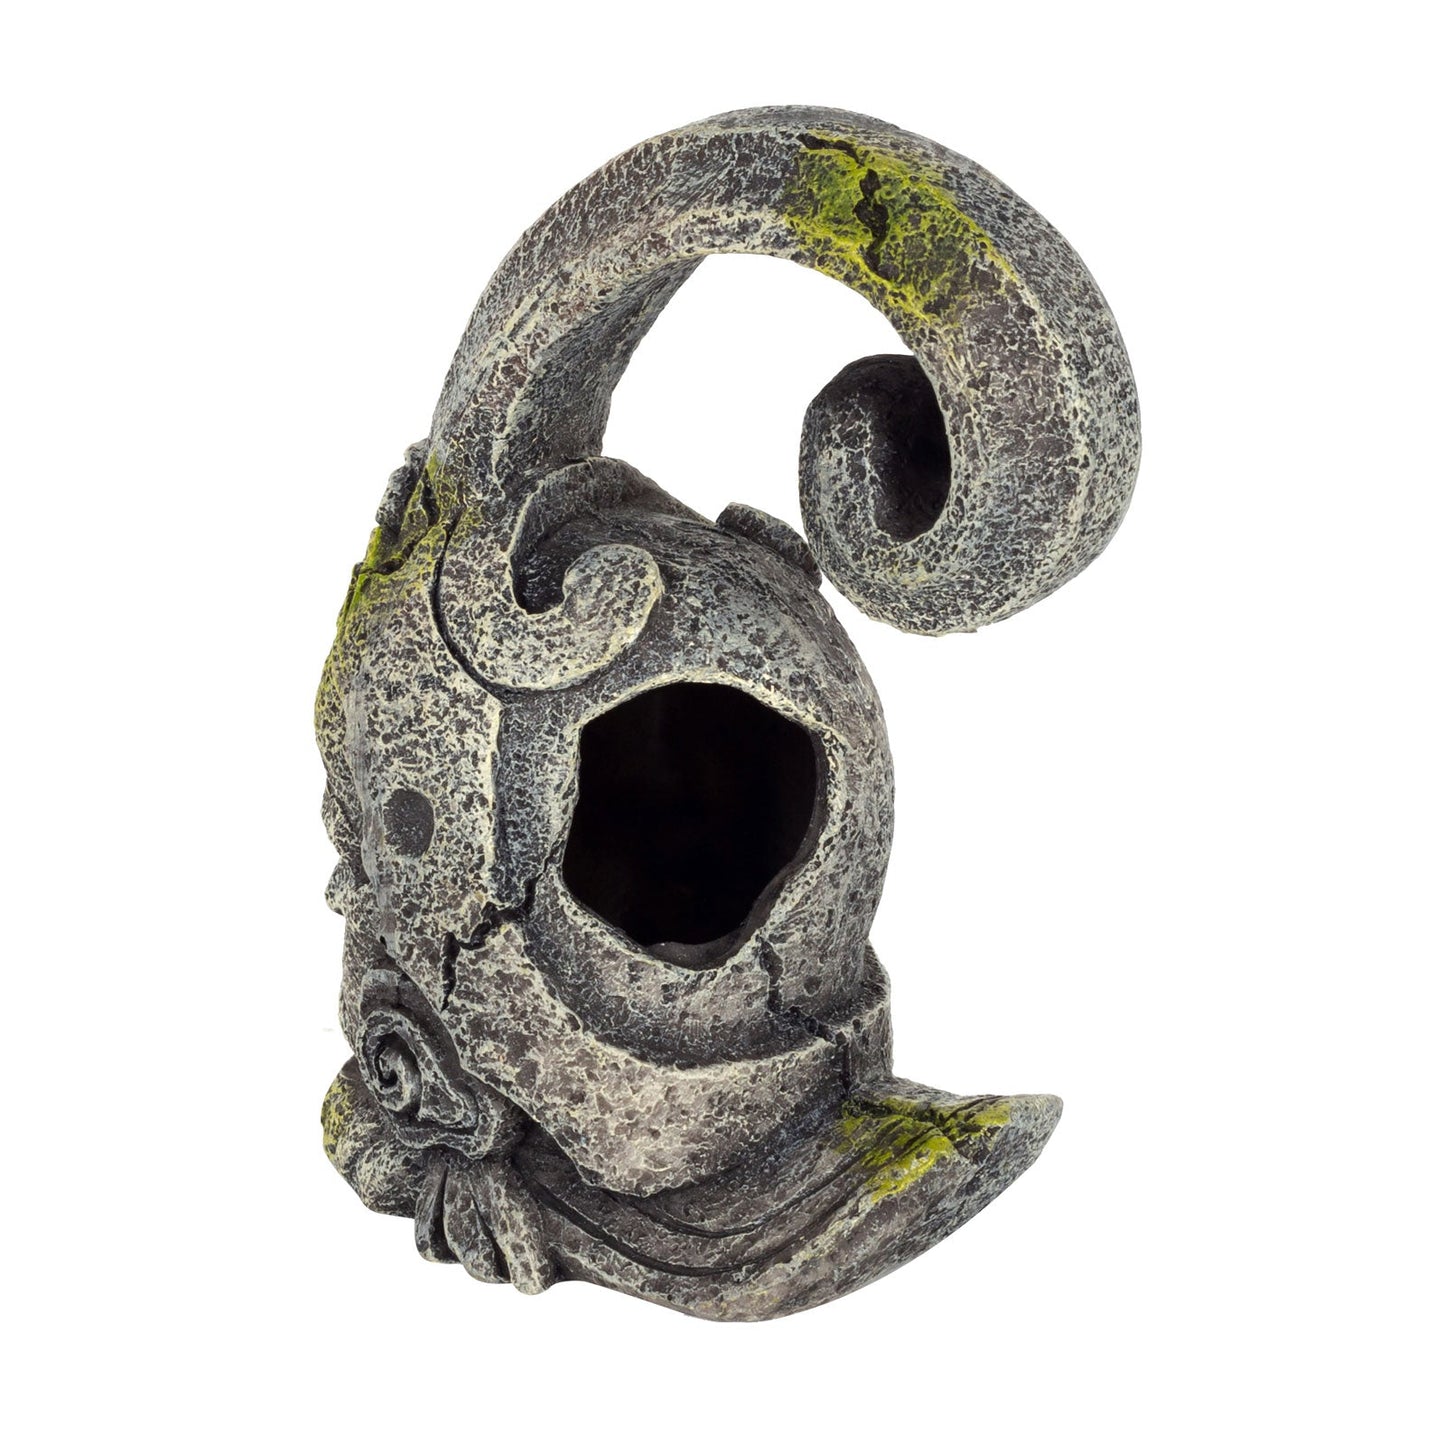 Reptile Ancient Head Statue Small Bulk Buy x12